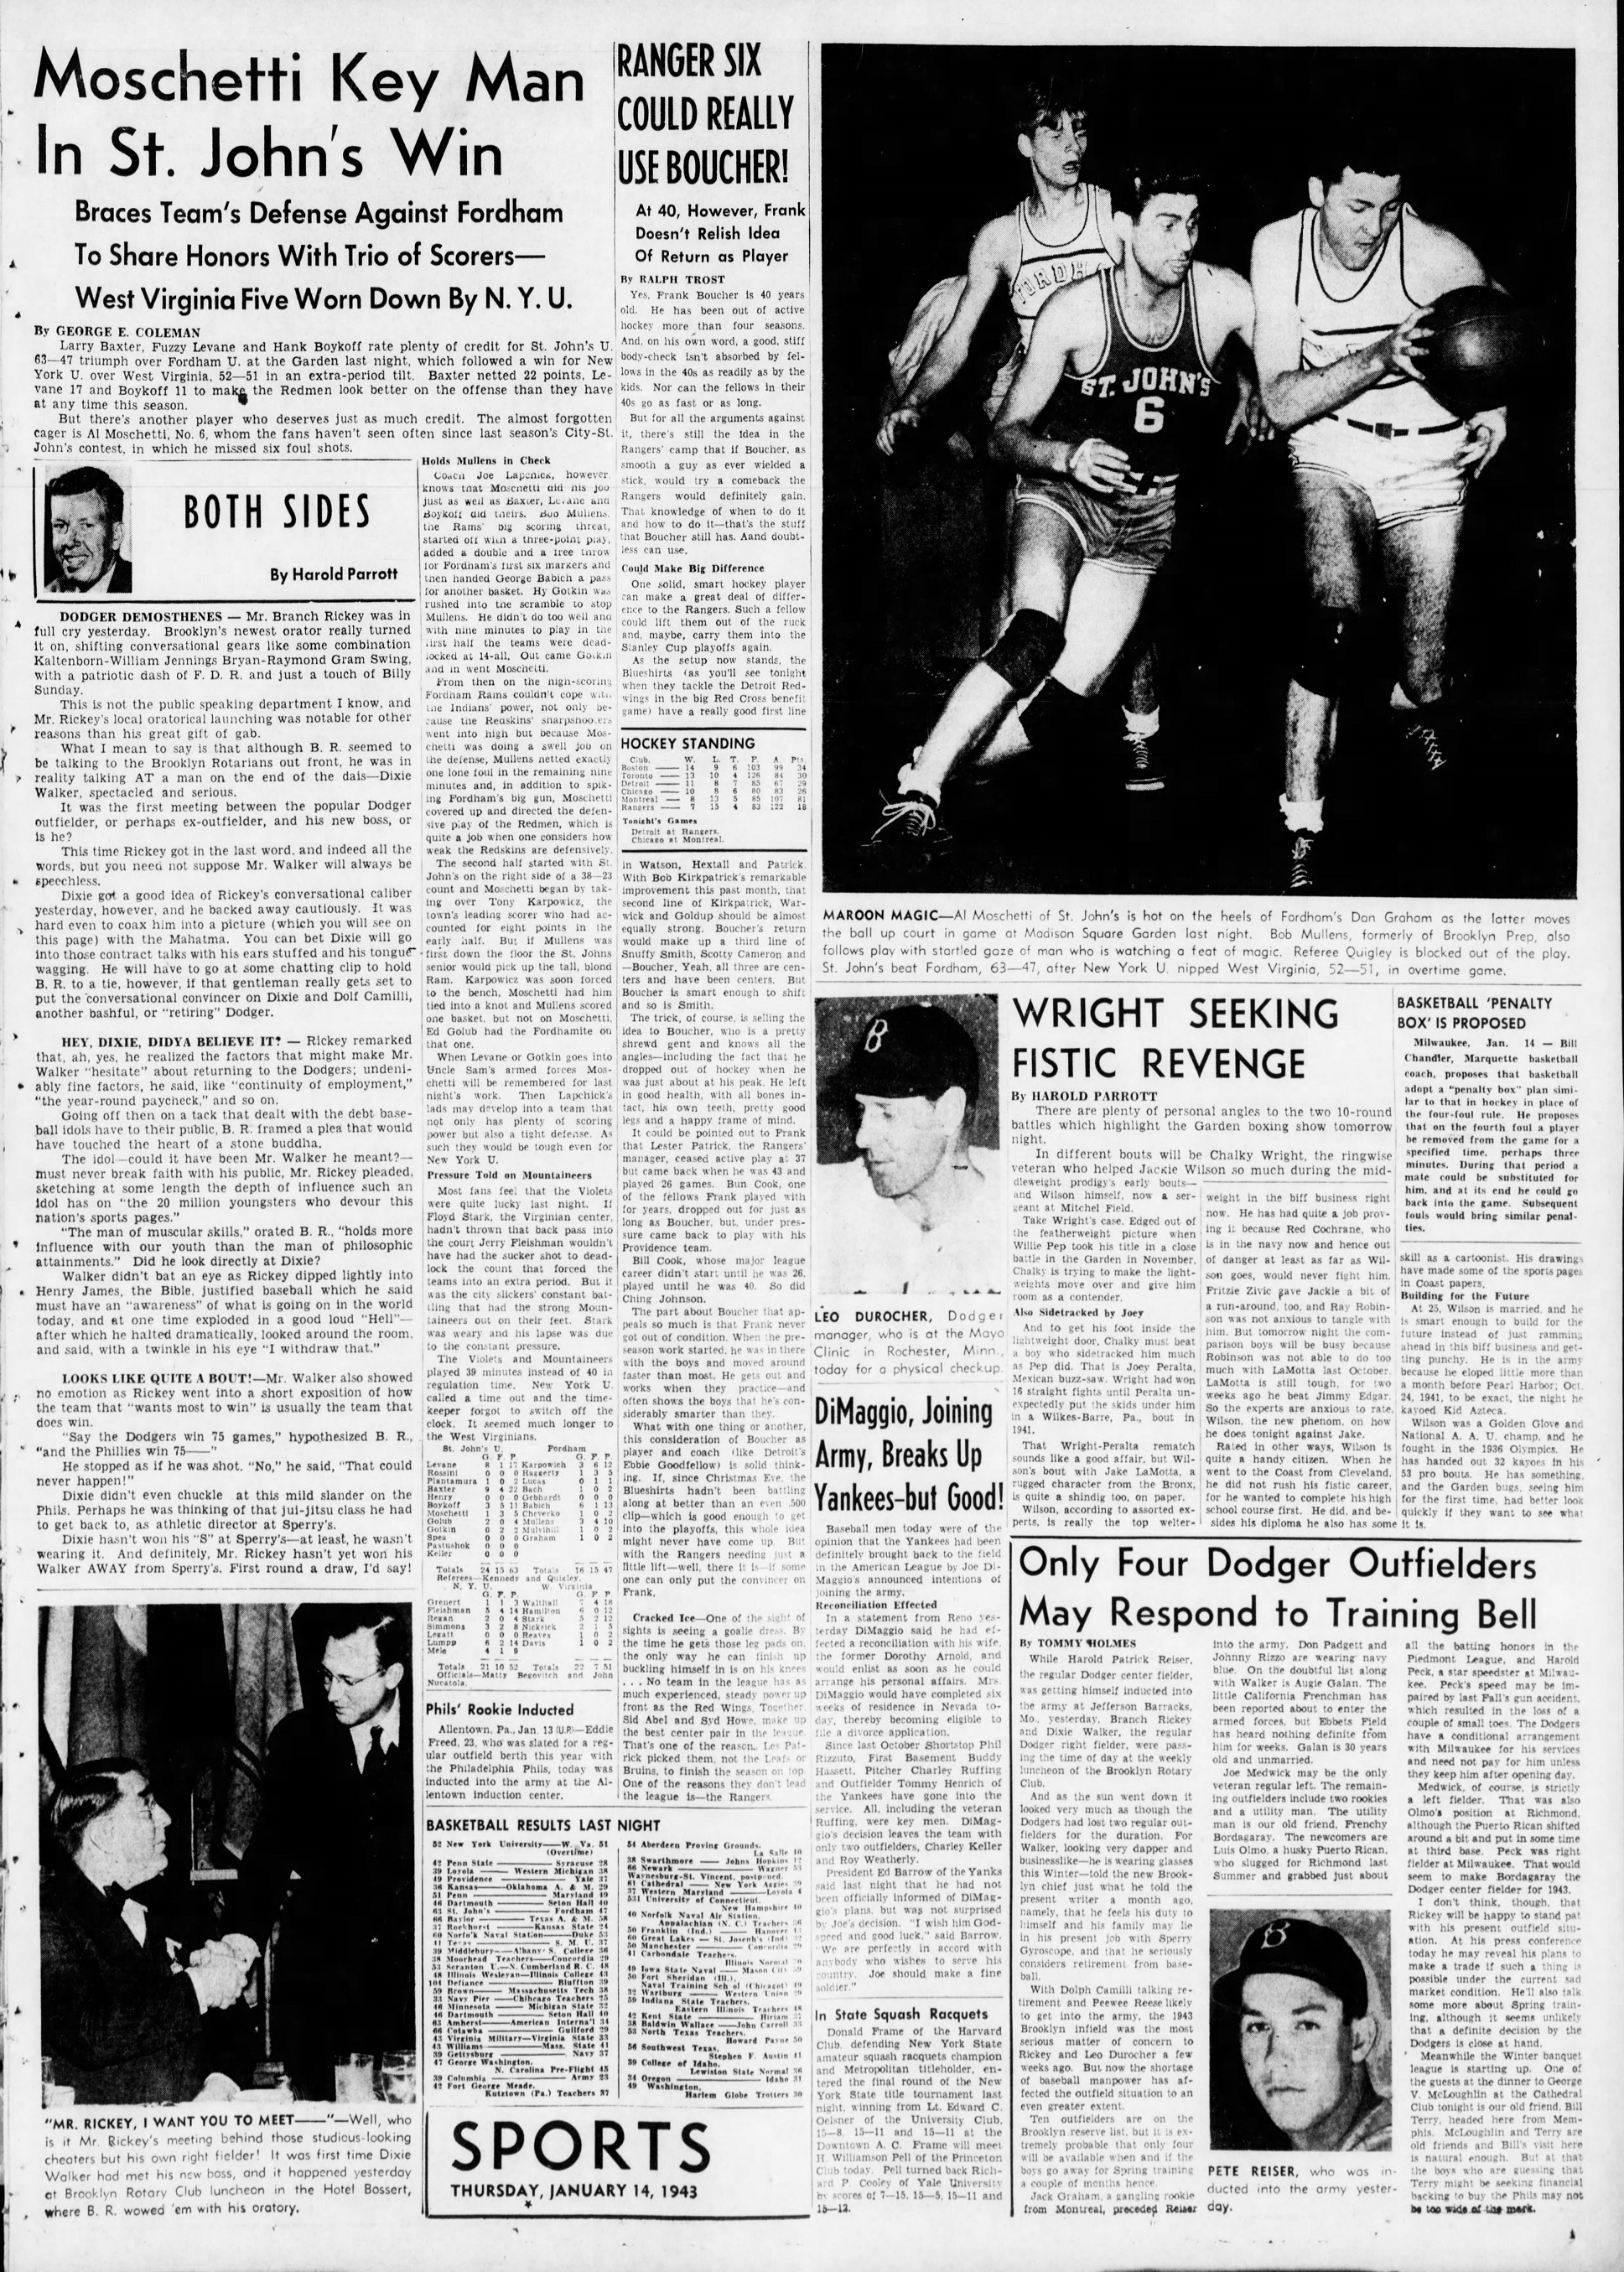 The_Brooklyn_Daily_Eagle_Thu__Jan_14__1943_(4).jpg